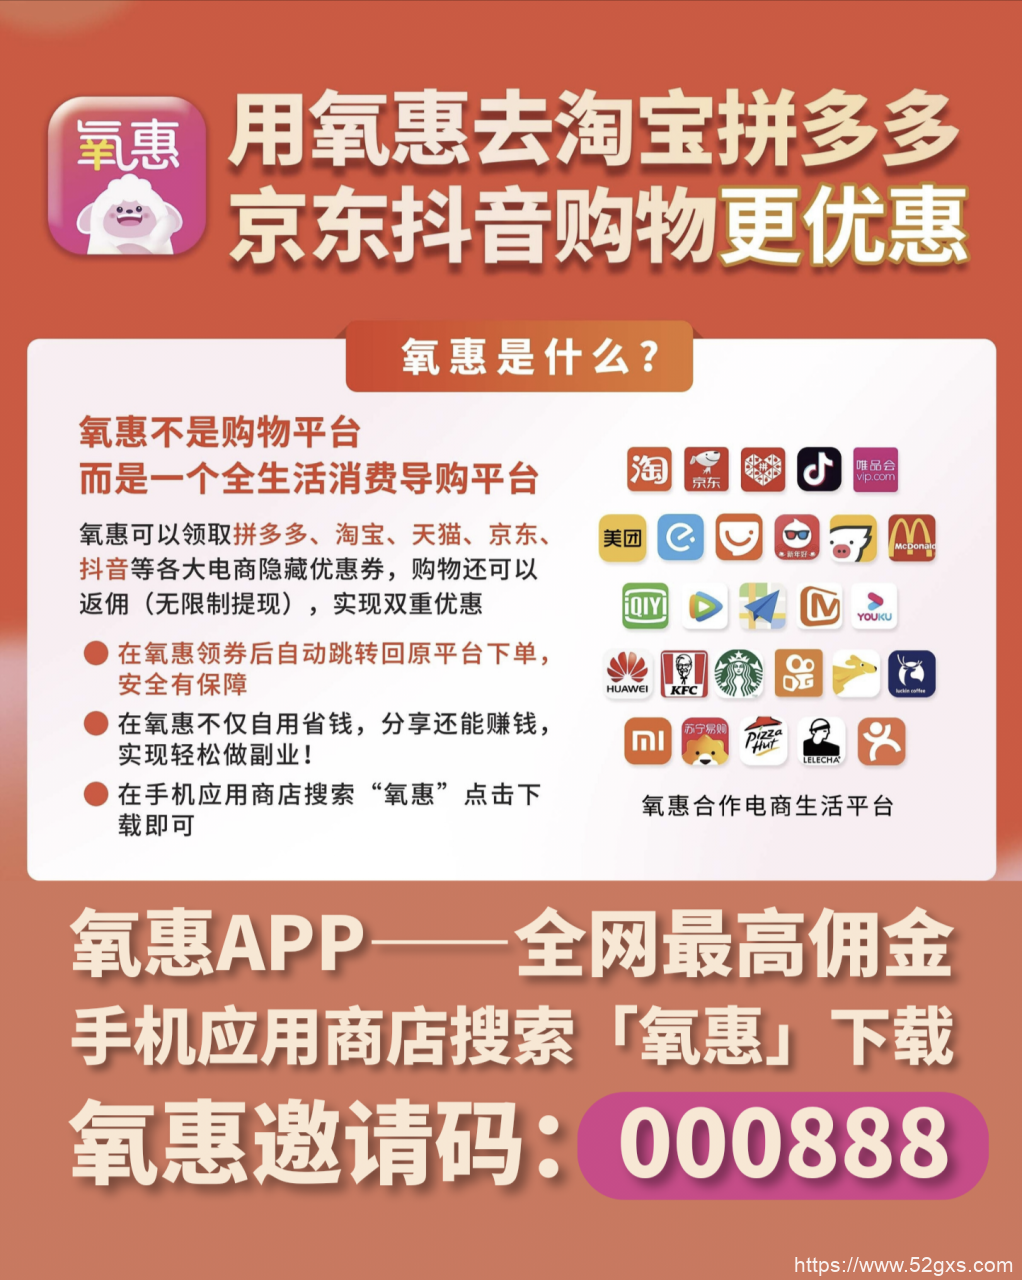 淘宝返利官方app 淘宝推广app拿返佣的平台 最新资讯 第2张